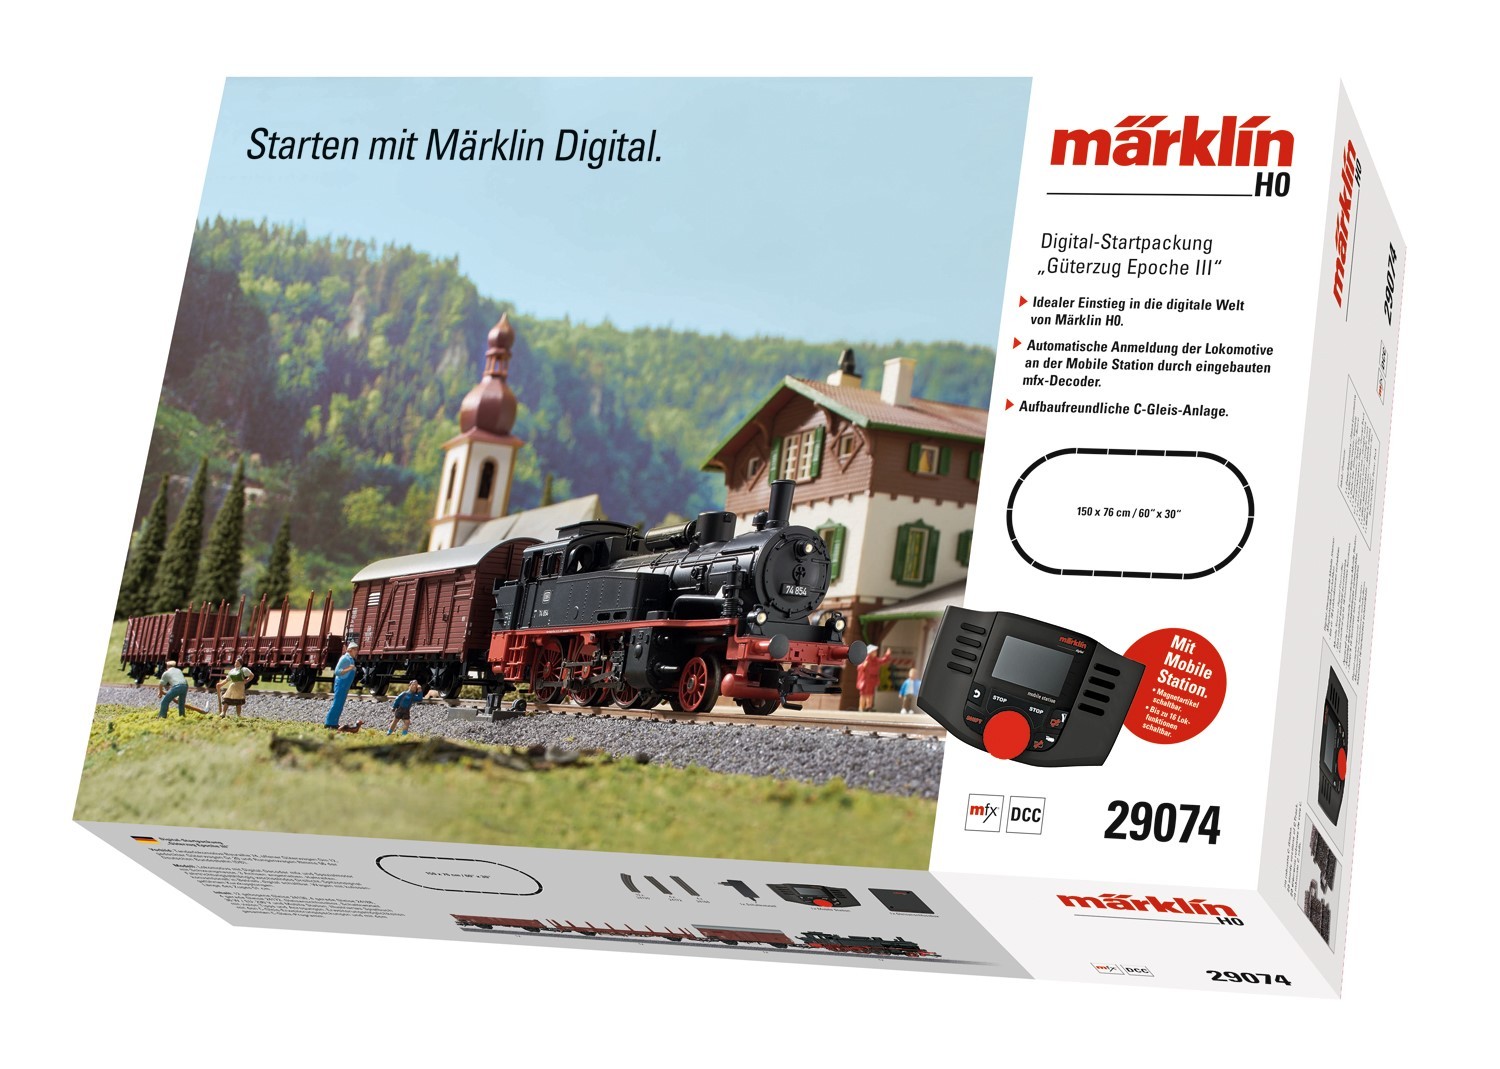 MÄRKLIN Digital-Startpackung "Güterzug Epoche III" (29074)